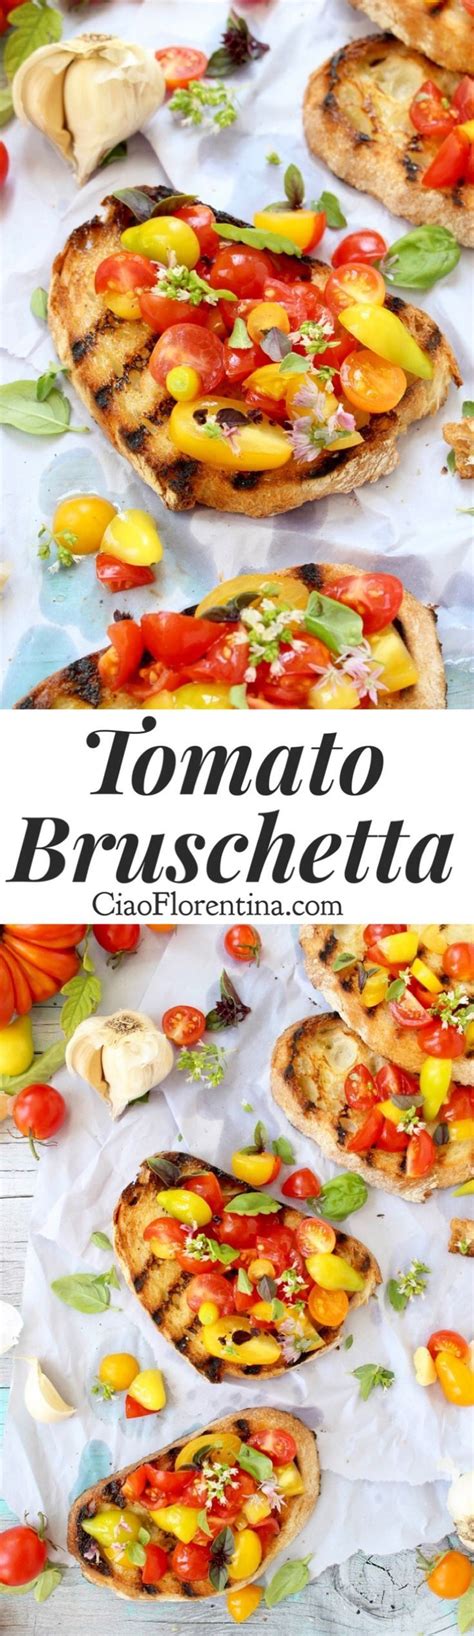 Tomato Bruschetta Recipe Ciaoflorentina Recipe